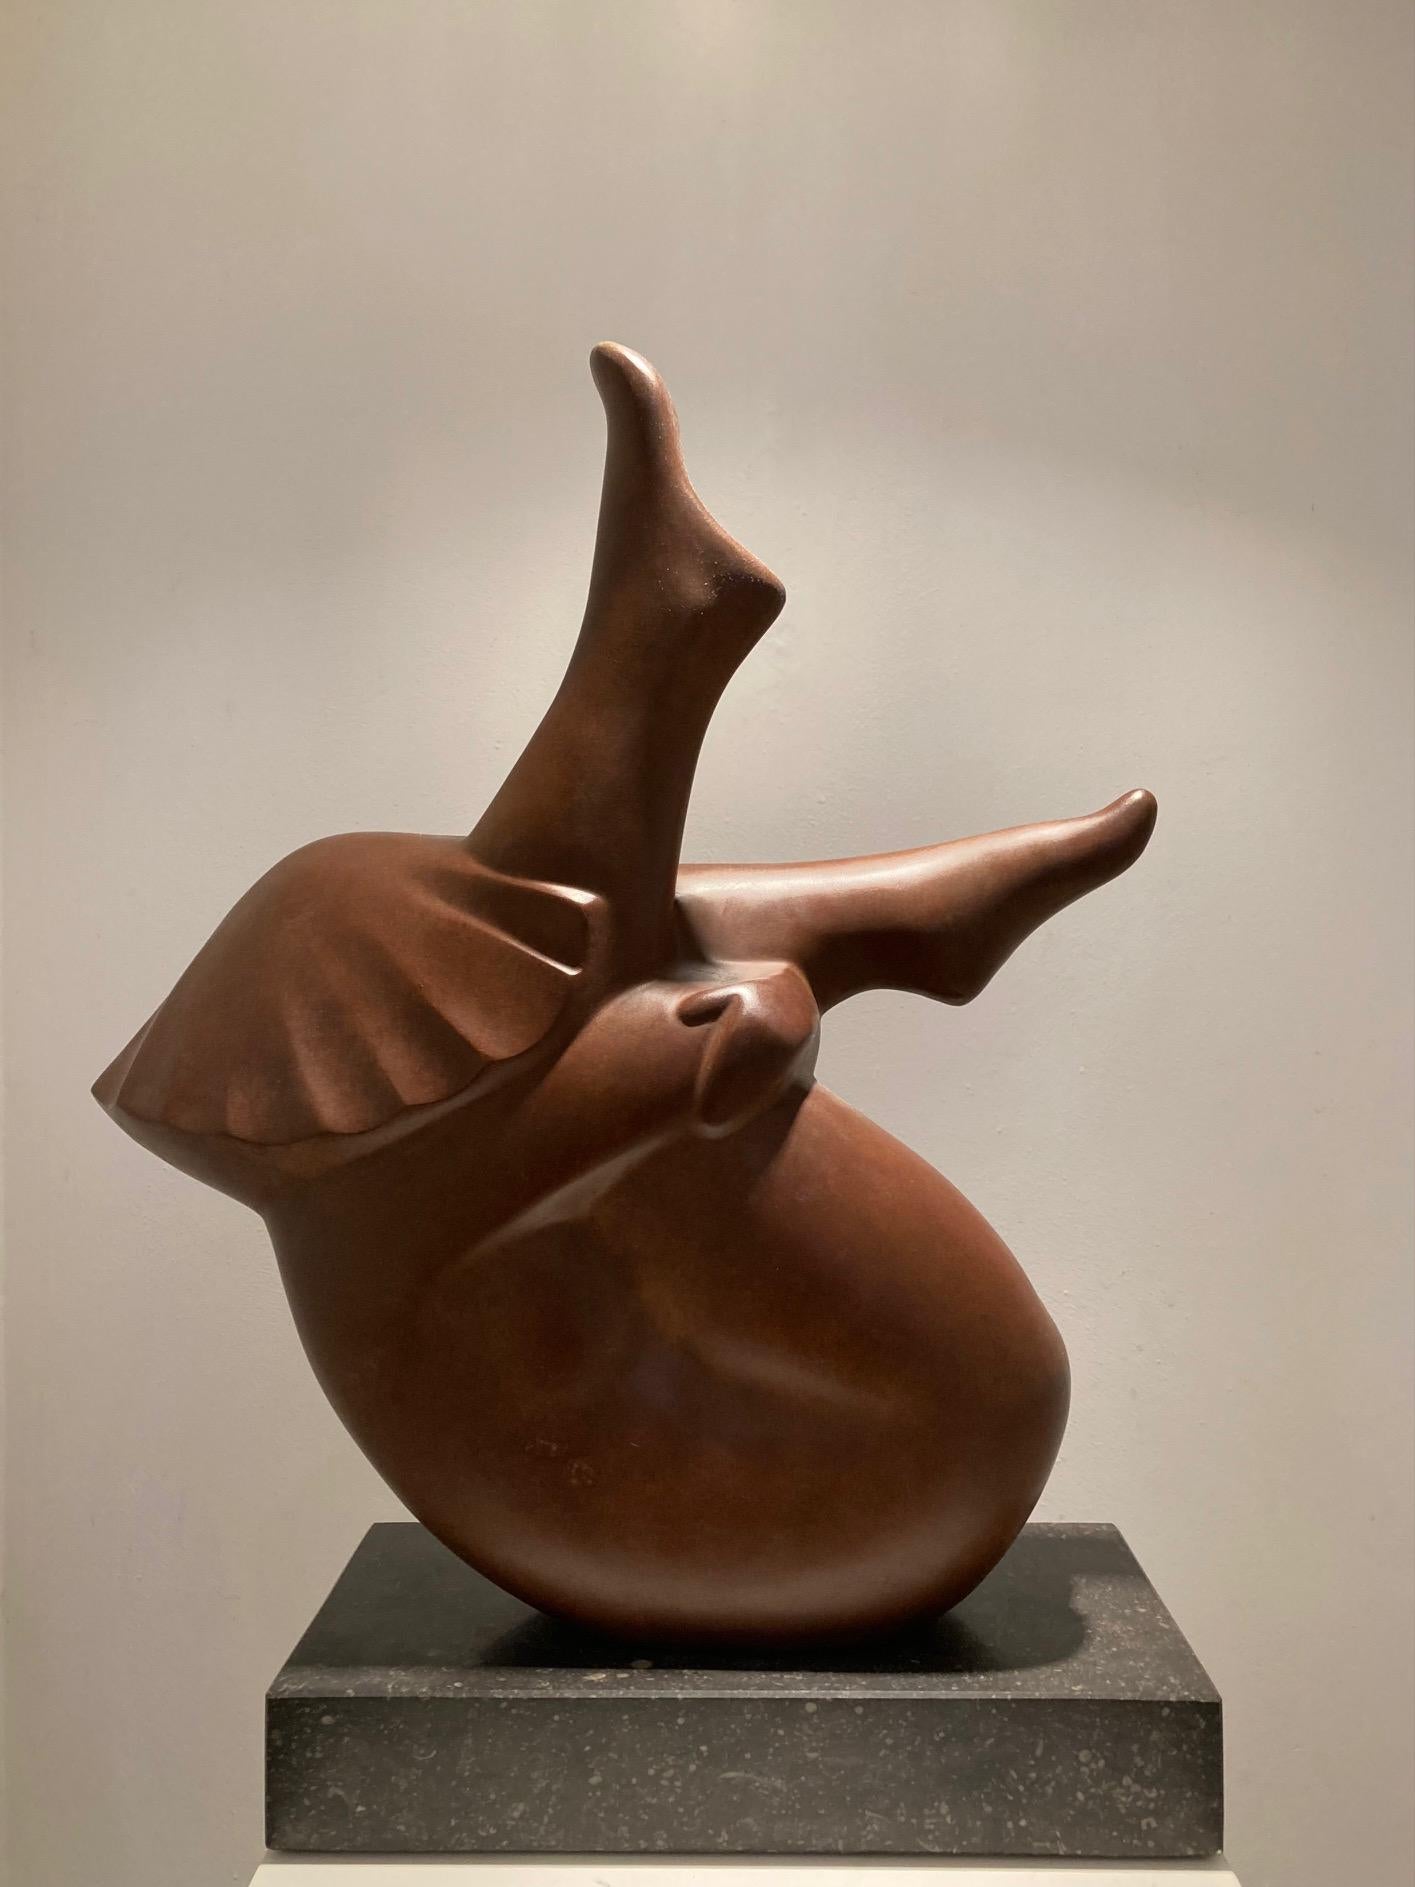 Liggend Meisje, Mädchen liegend, Bronzeskulptur Vorrätig

Evert den Hartog (geboren 1949 in Groot-Ammers, Niederlande) absolvierte eine Ausbildung zum Bildhauer an der Rotterdamer Akademie der Bildenden Künste. In den Jahren 1971-1976 waren seine